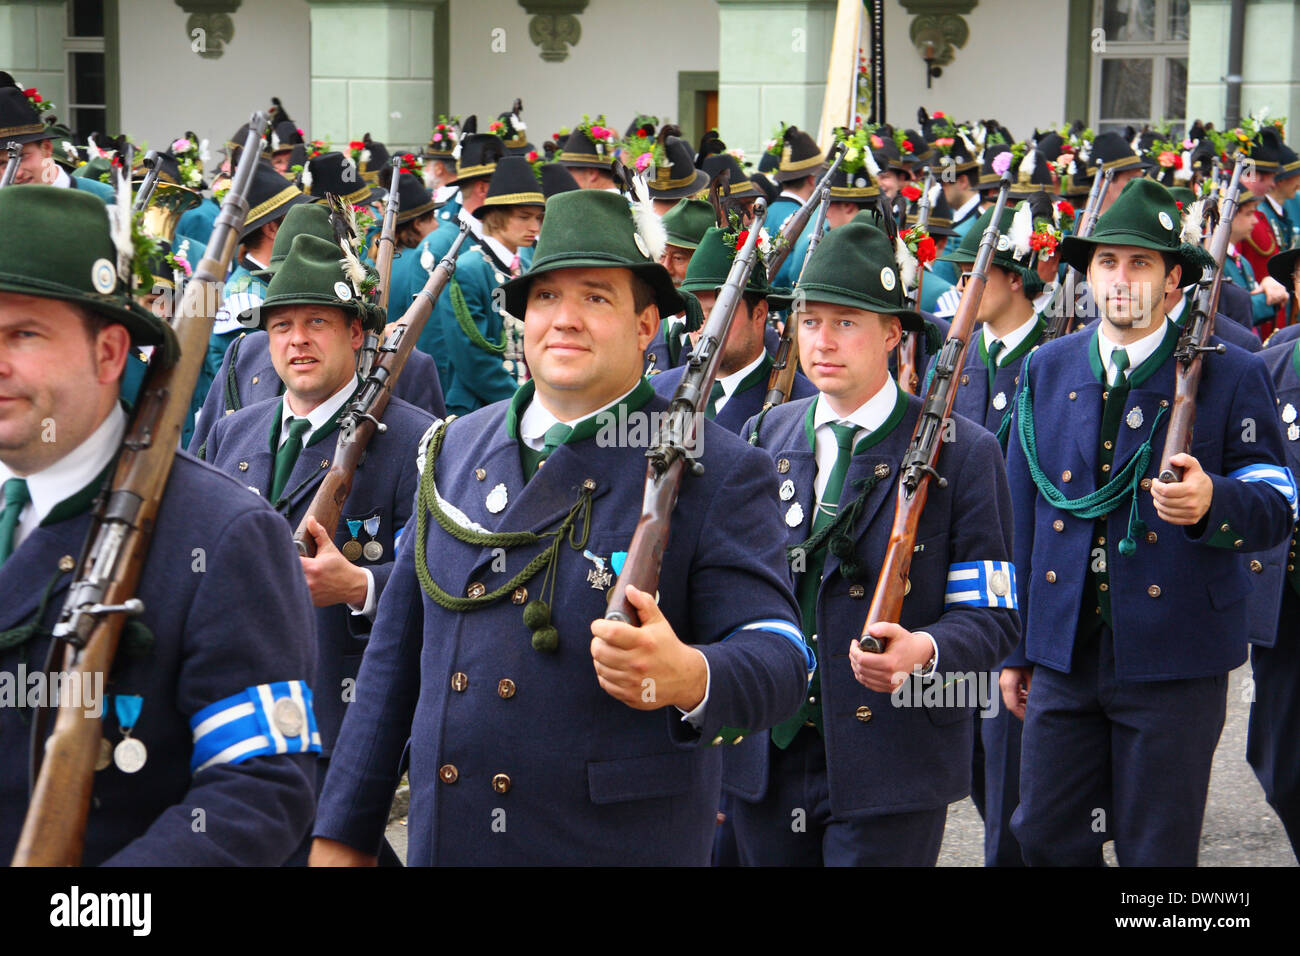 Mitglieder der Bayerischen Schützenverein in ein Kostüm parade mit geschultert Gewehre, Benediktbeuern, Bayern, Deutschland Stockfoto